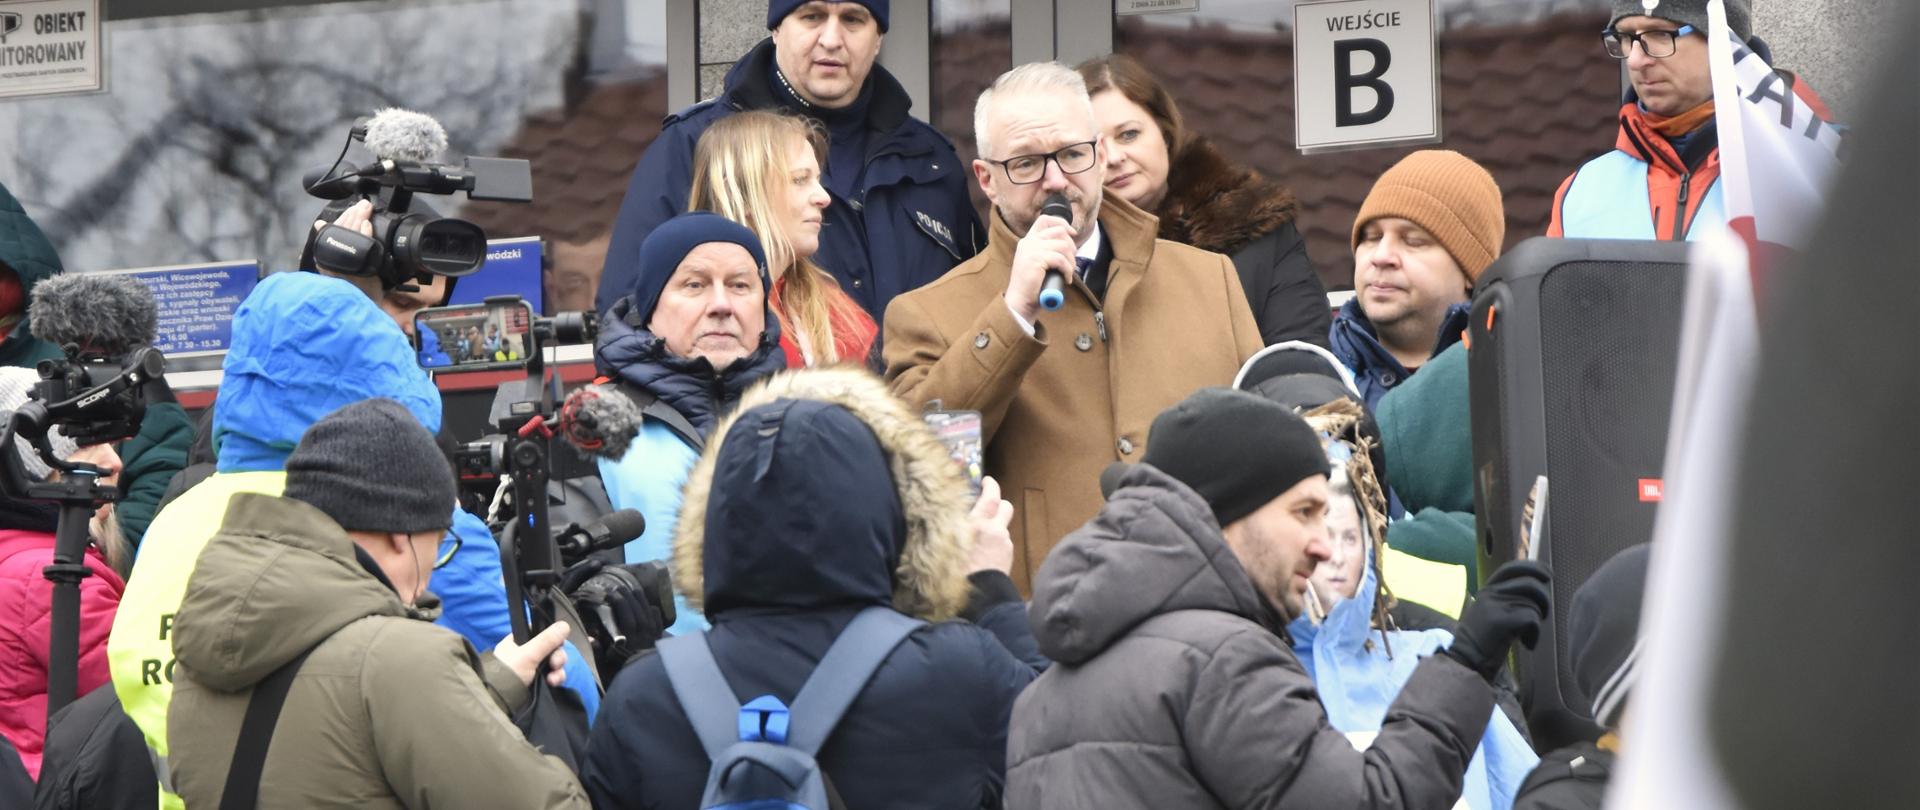 Wojewoda Radosław Król spotkał się z protestującymi rolnikami